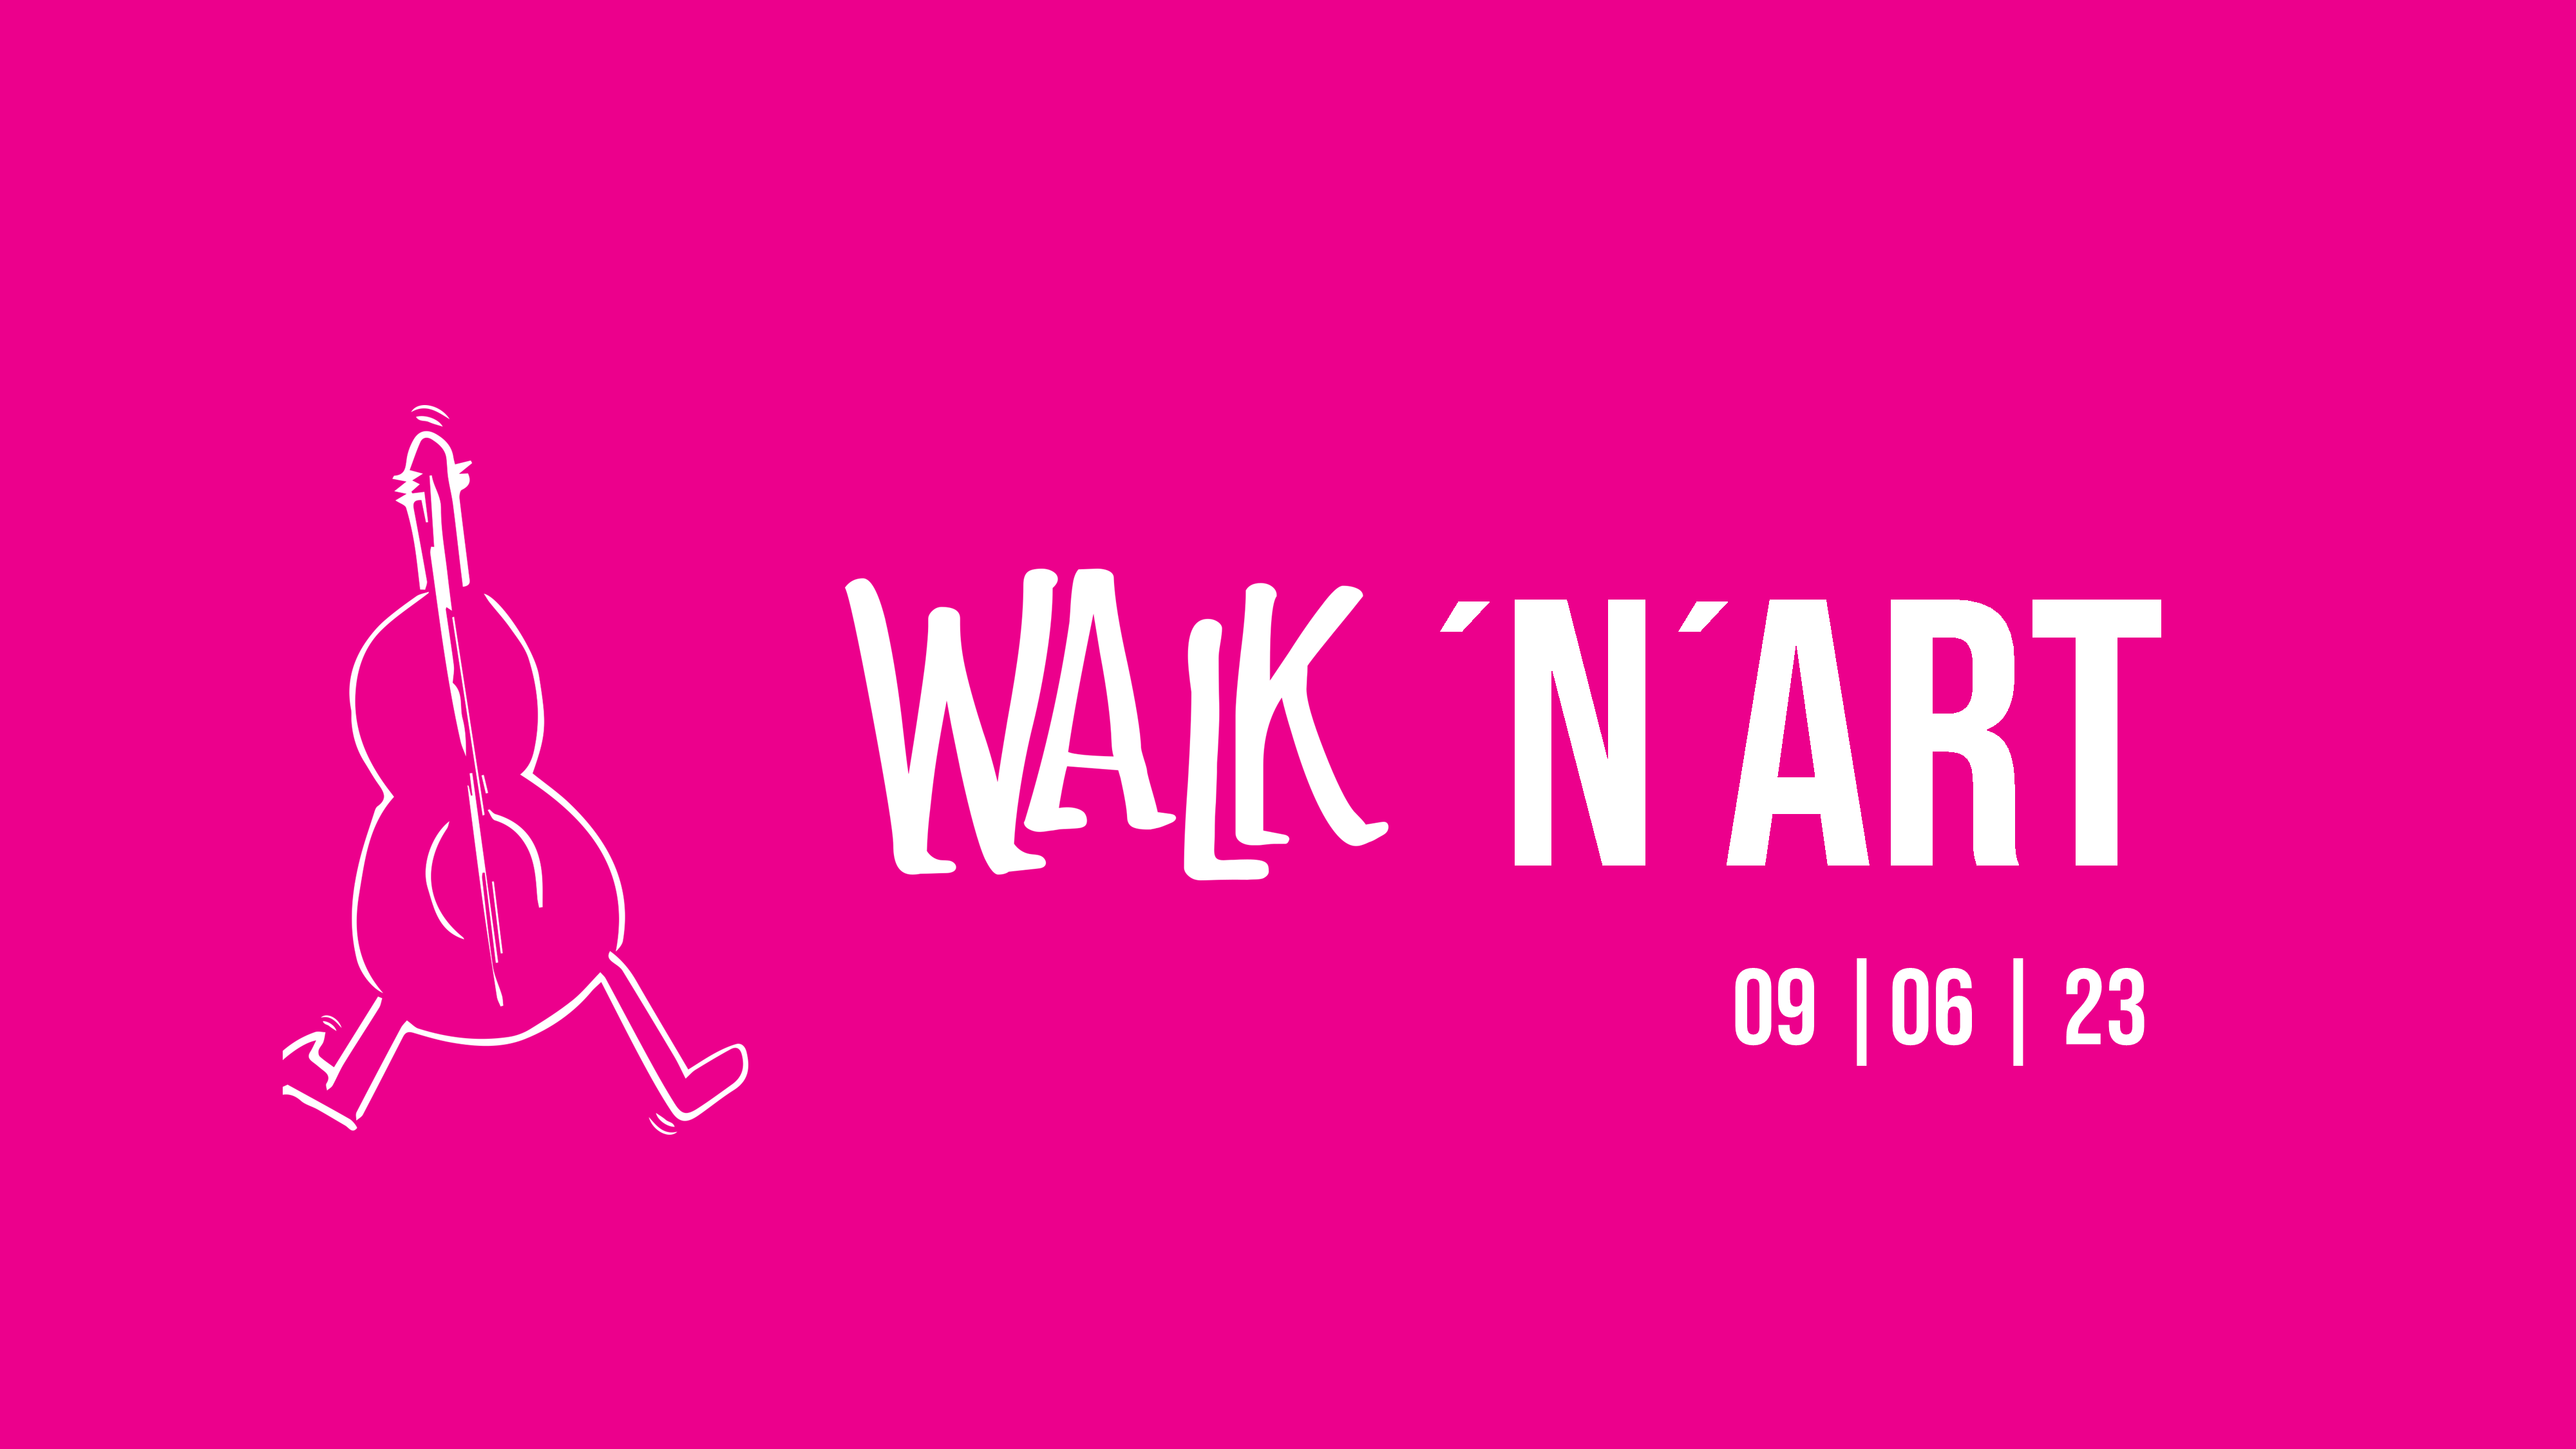 (c) Walk-n-art.de